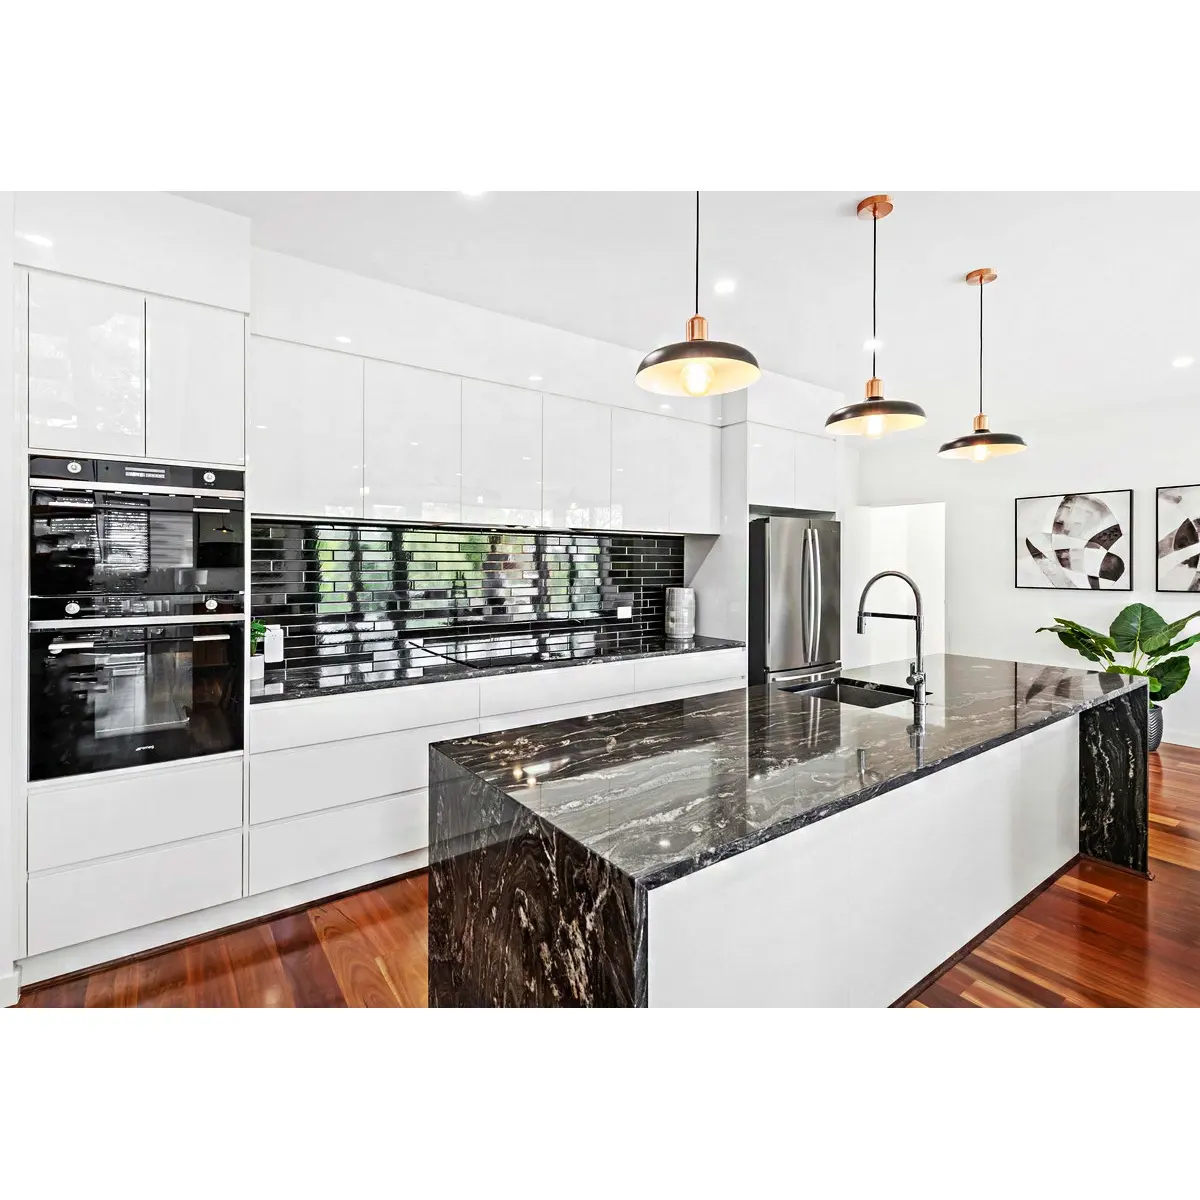 Gabinete de diseño de cocina lacado blanco frío brillante moderno diseño simple elegante sin asa